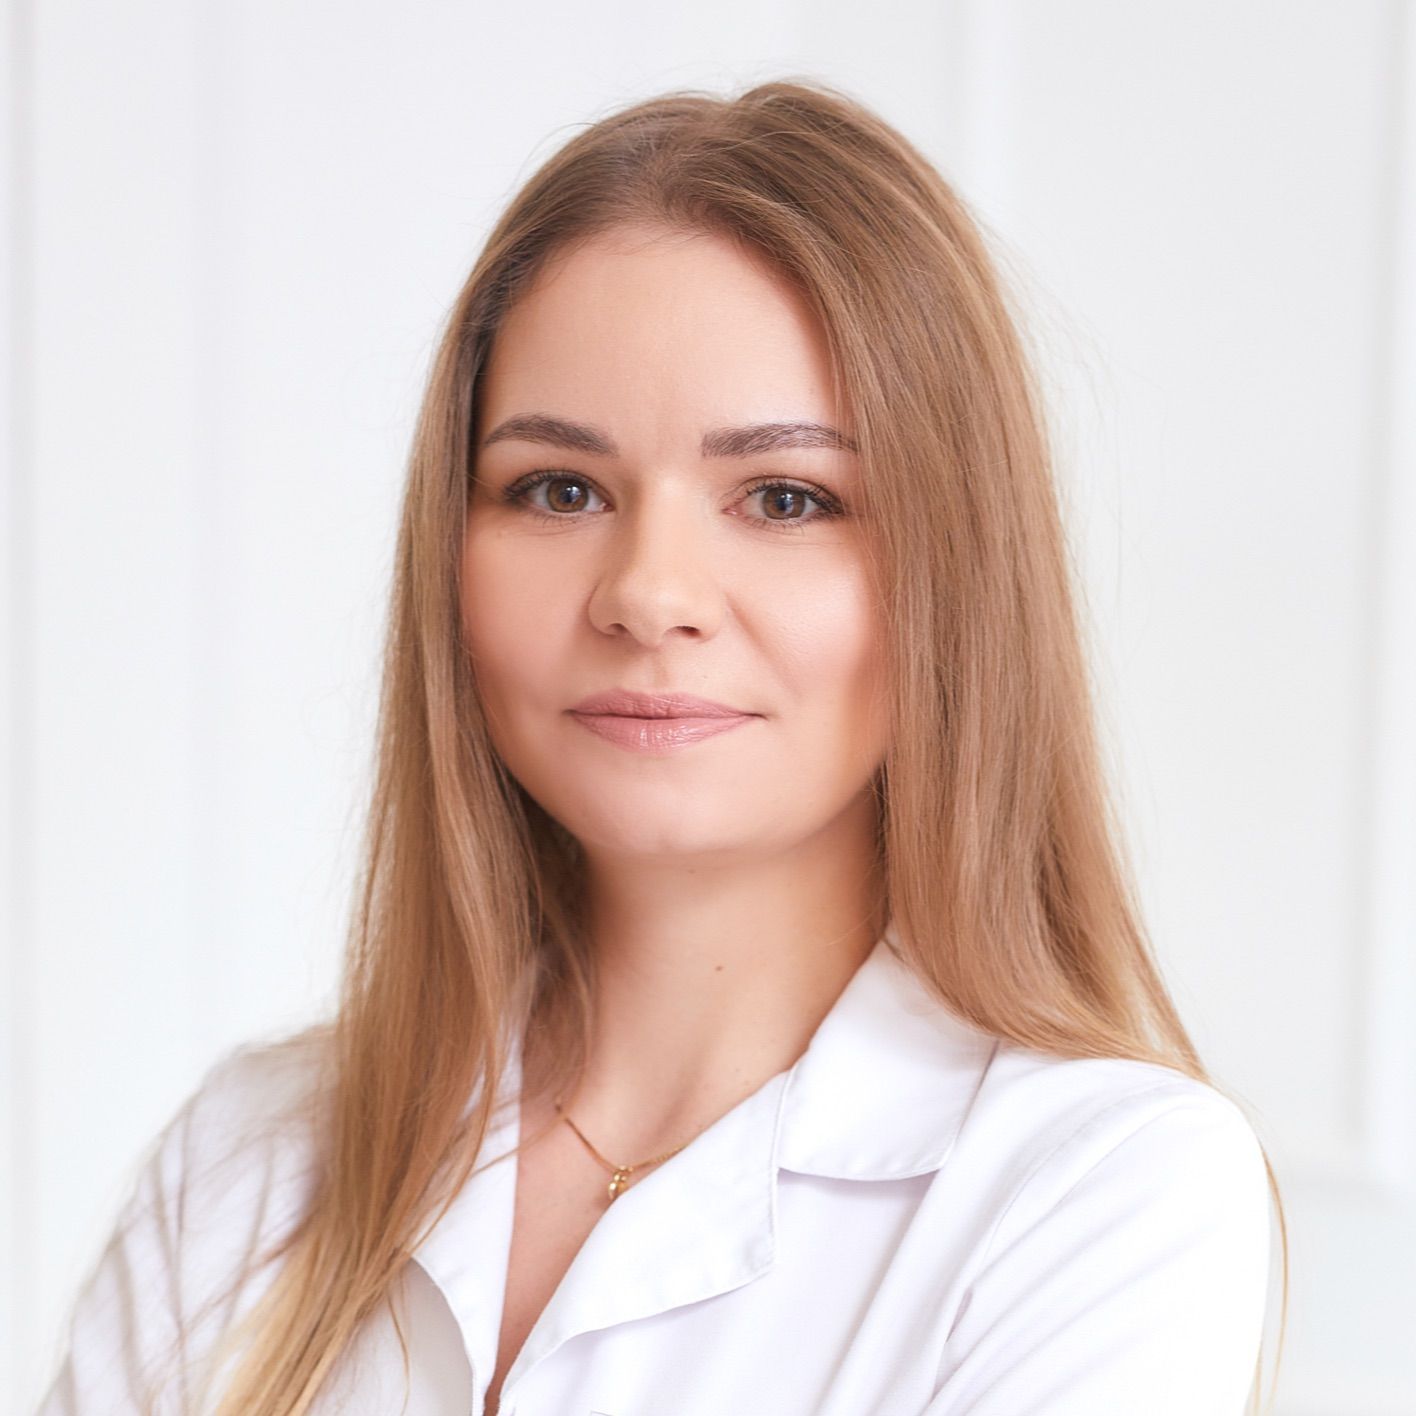 Paulina W. - J'ADORE INSTYTUT Aleje Jerozolimskie 42 Warszawa Kosmetologia, Laseroterapia, Medycyna Estetyczna, Spa i Fryzjerstwo